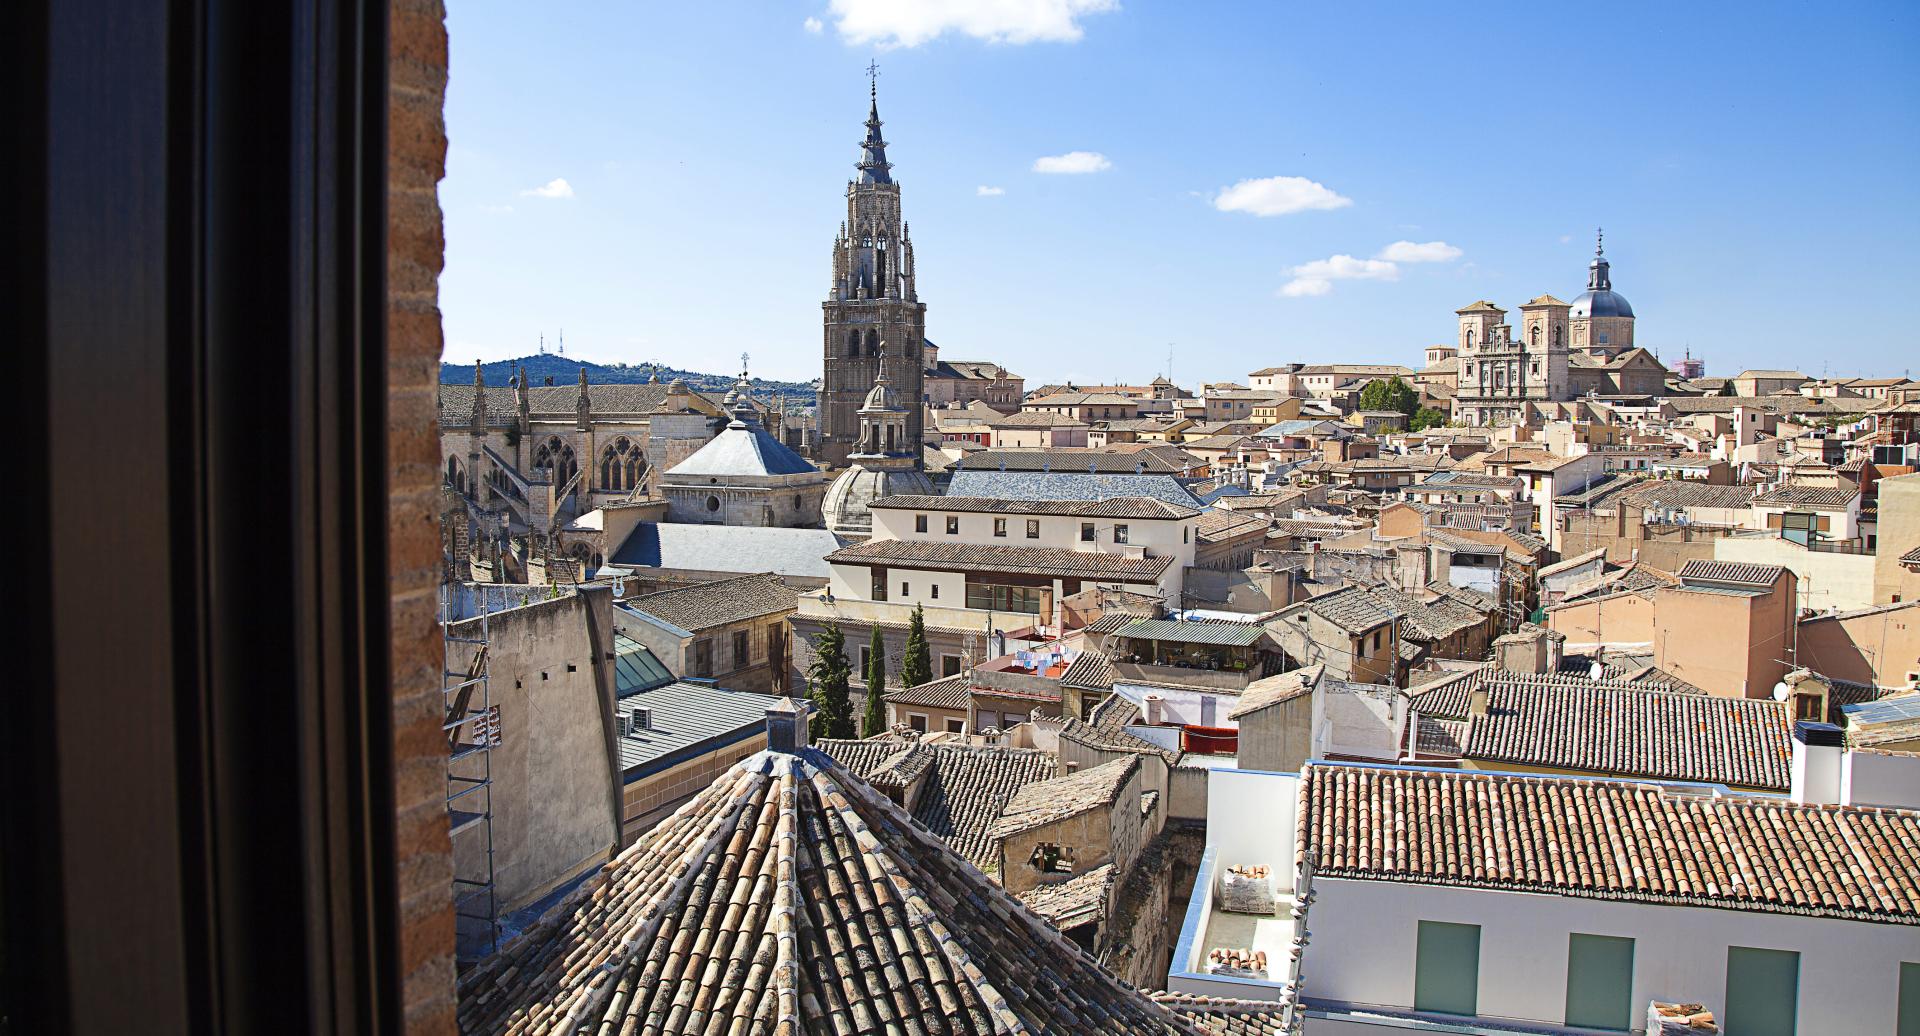 Toledo, monumental city